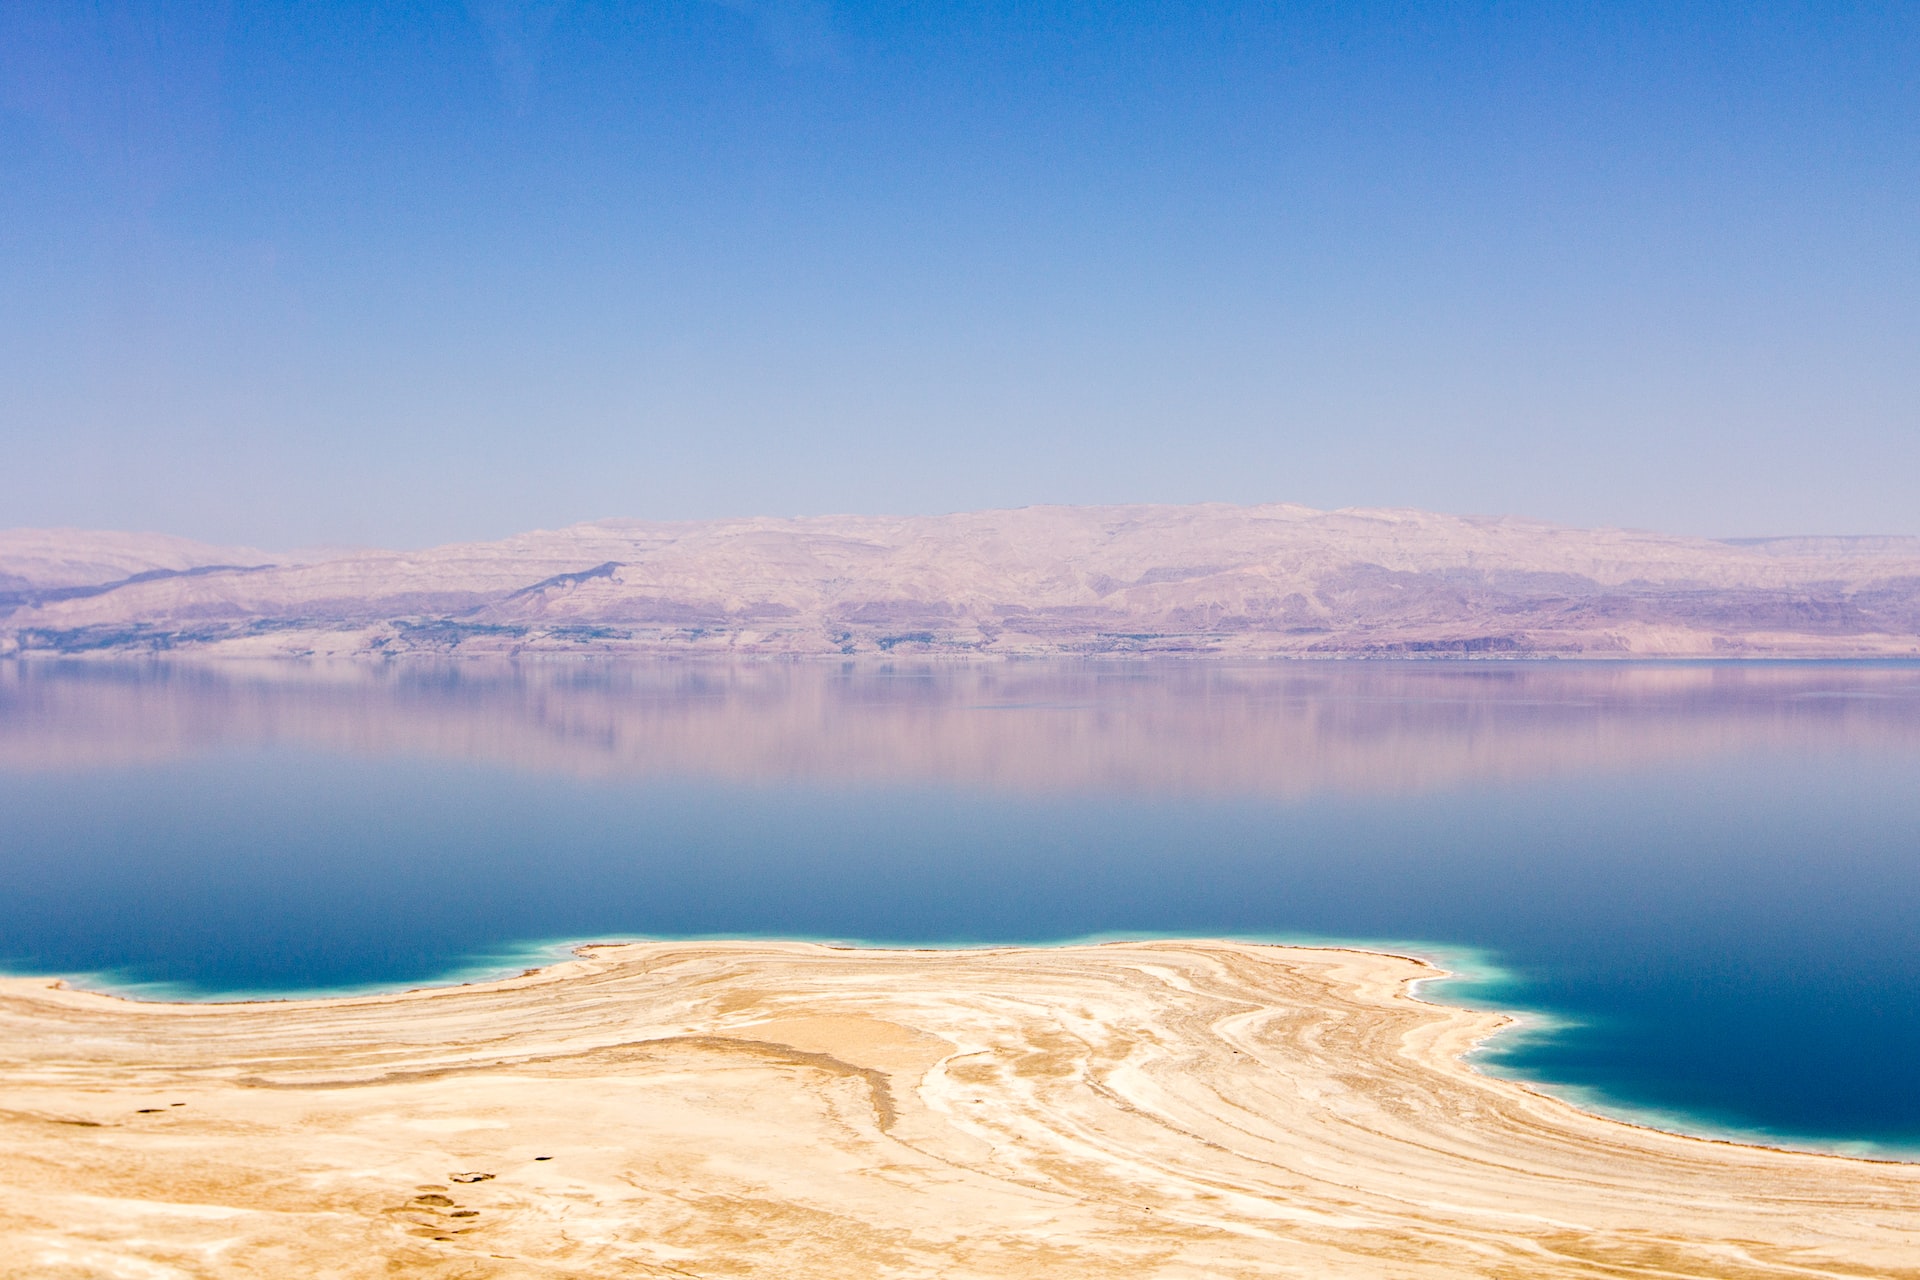 Day 6: Wadi Rum - Dead Sea 